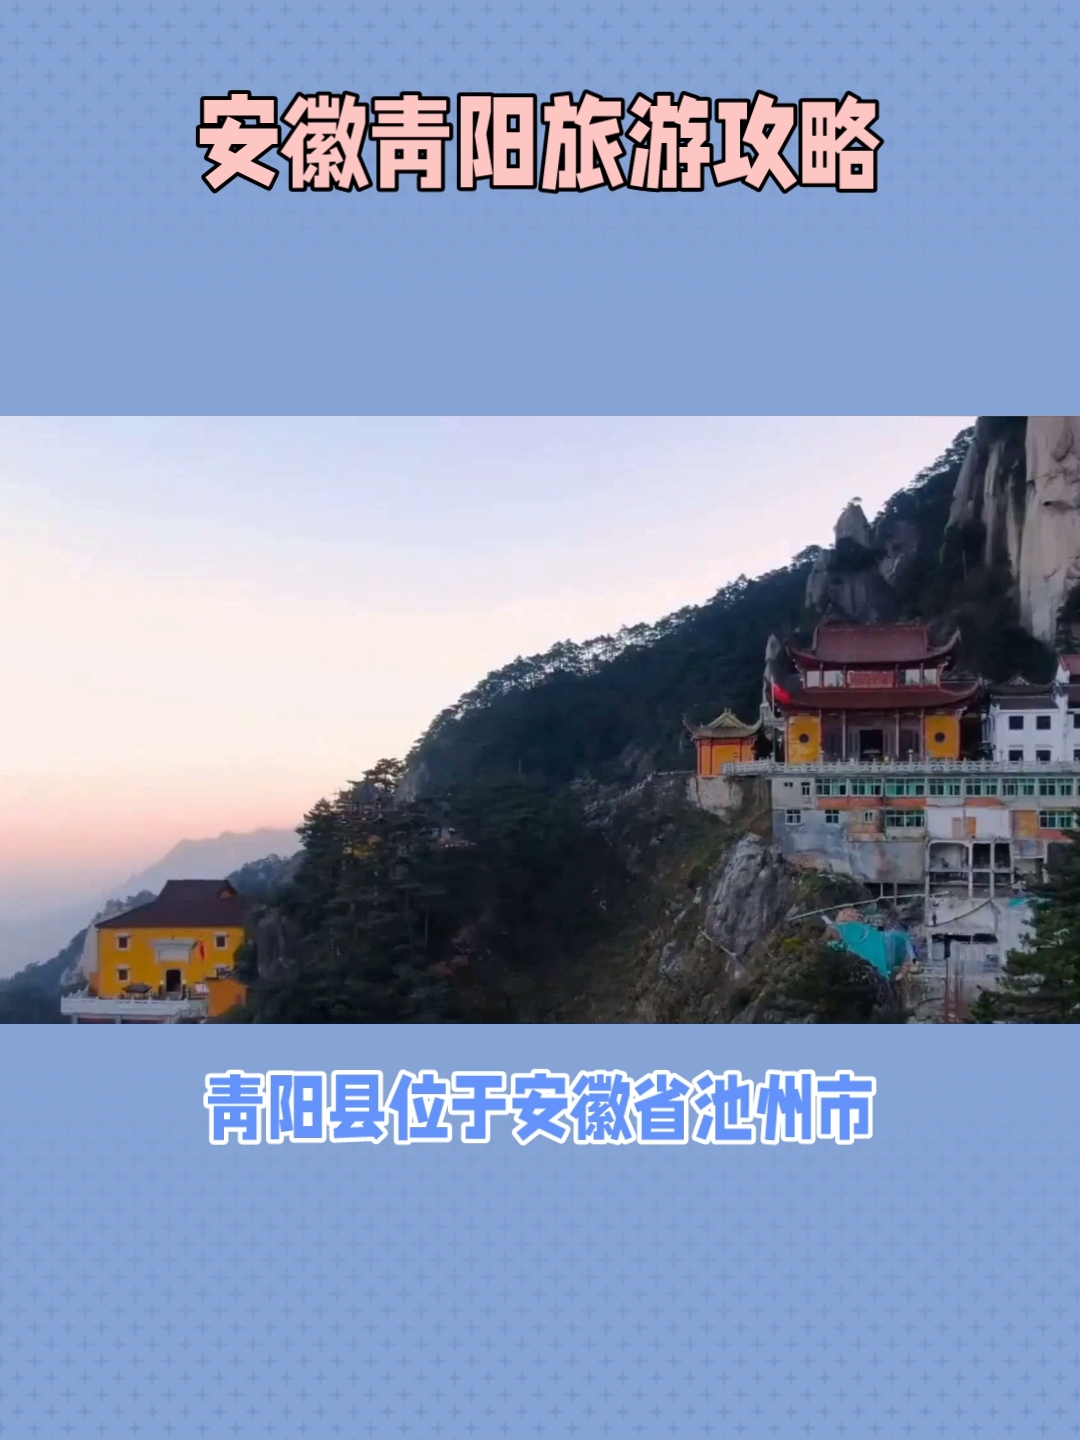 青阳县位于安徽省池州市，是一个充满自然美景和佛教文化的地方。